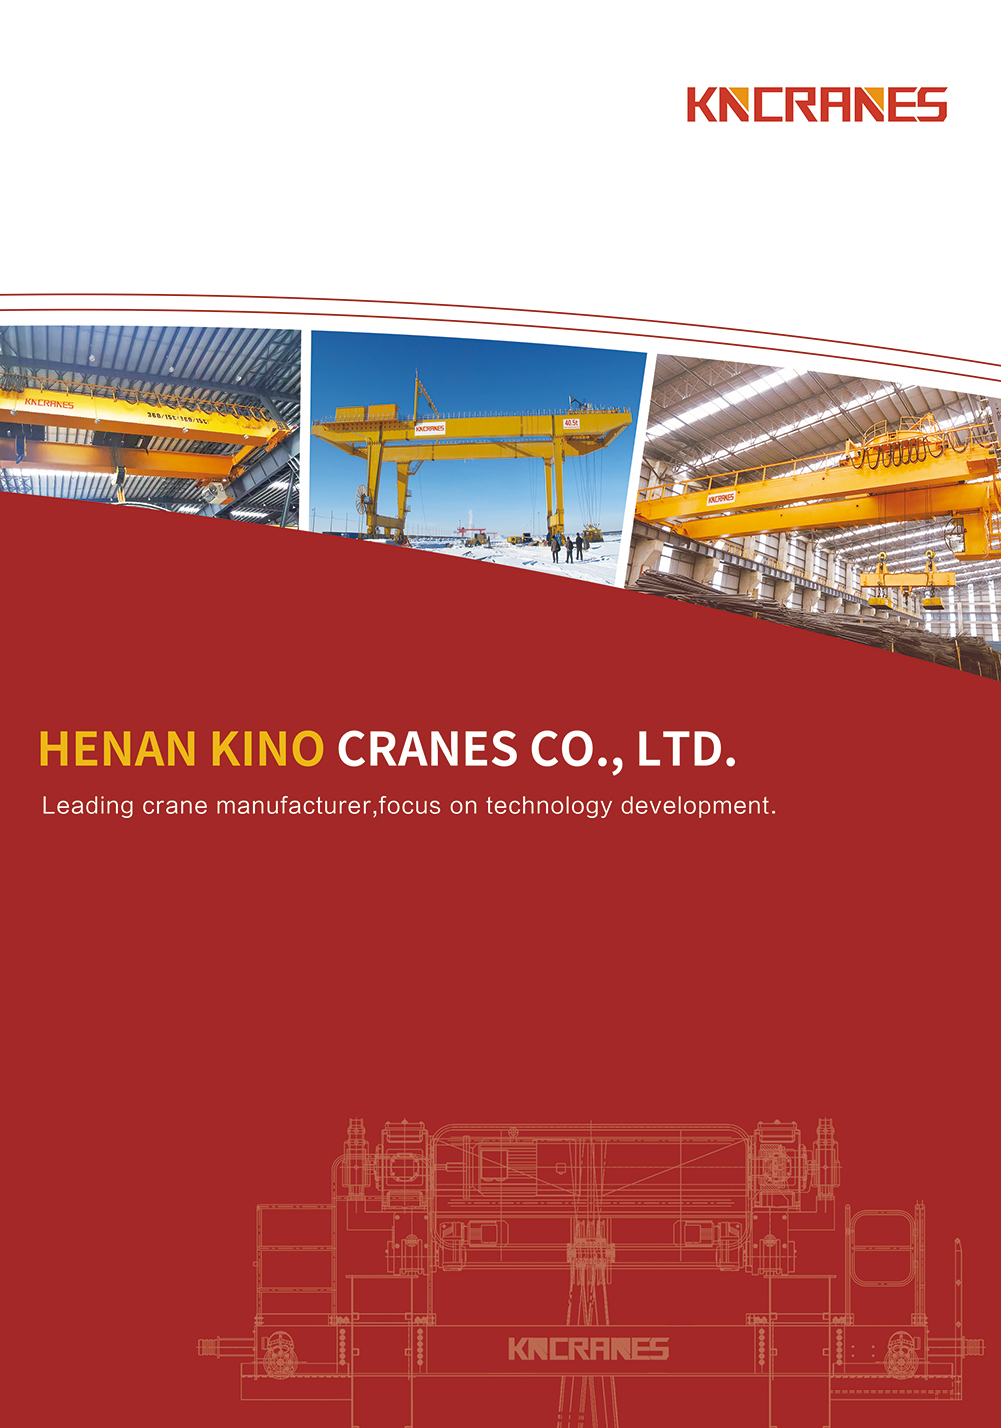 European Crane Catalogue Cover